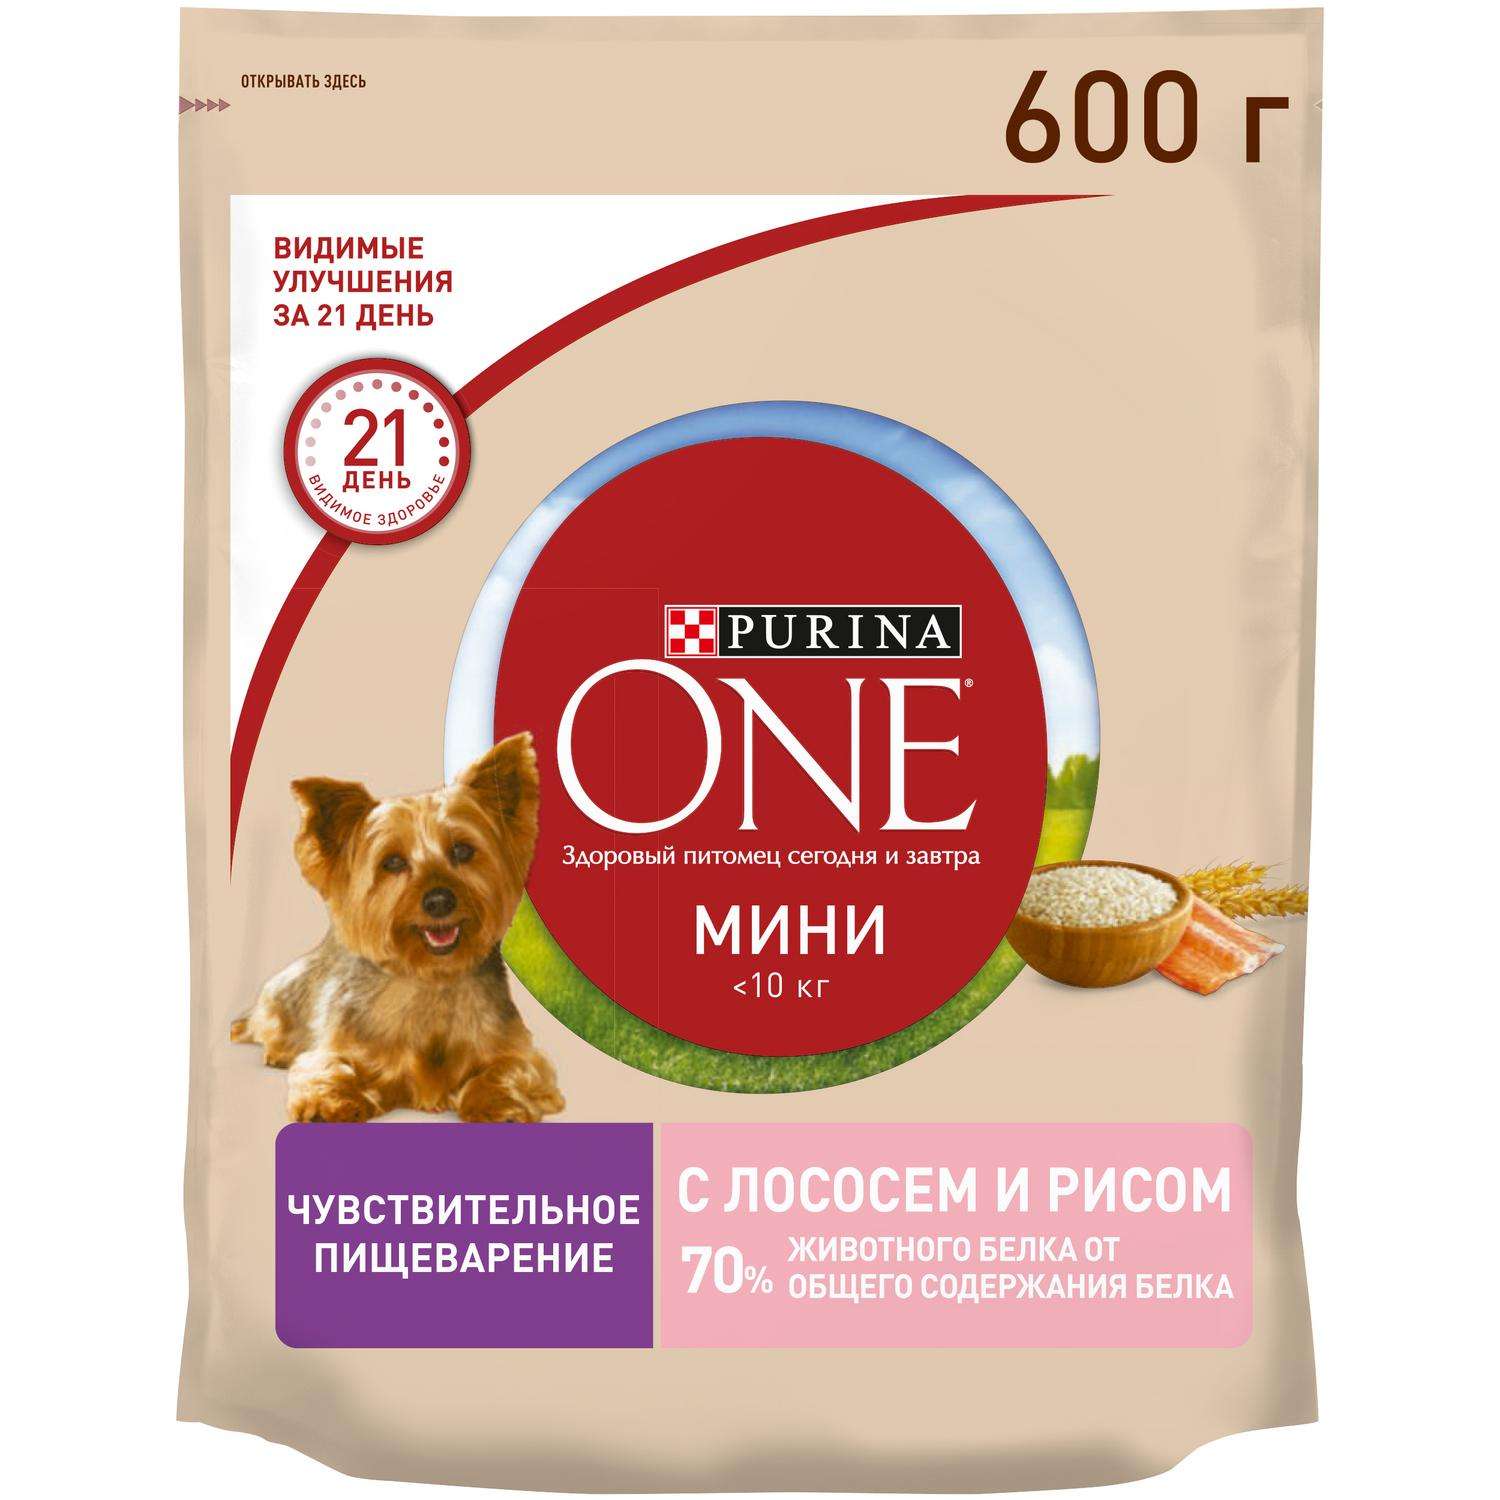 Корм для собак Purina One Mini чувствительное пищеварение лосось-рис 600г  купить по цене 276 ₽ с доставкой в Москве и России, отзывы, фото